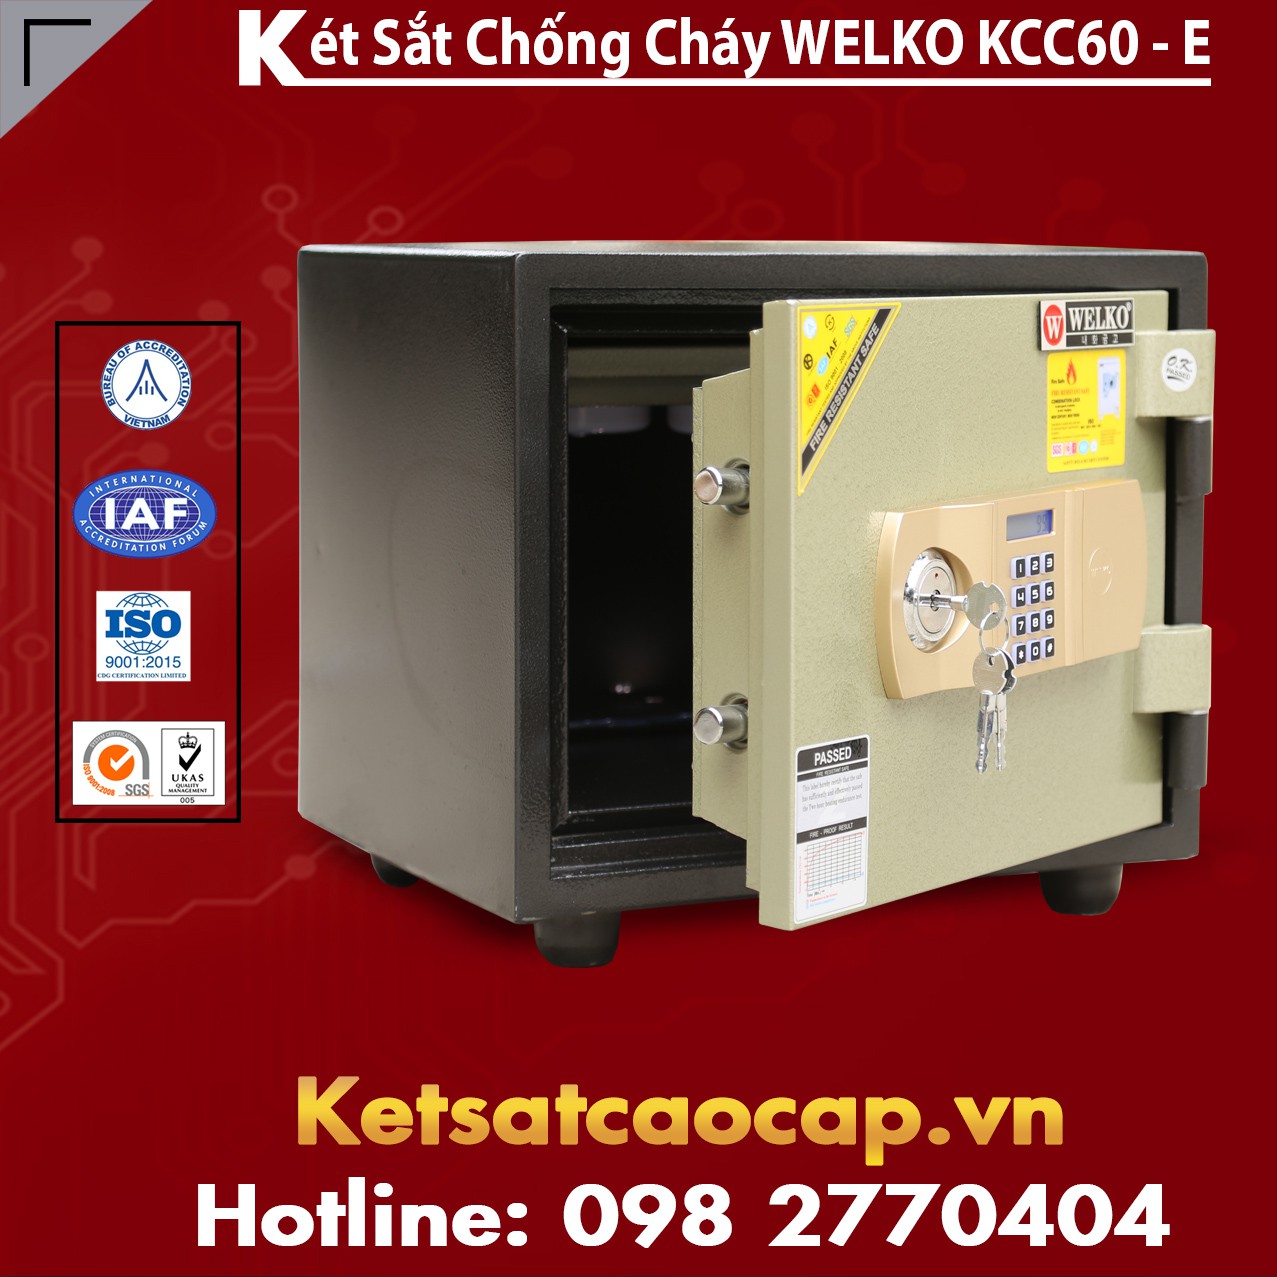 Ket Sat Chong Chay KCC60 E - GOLD